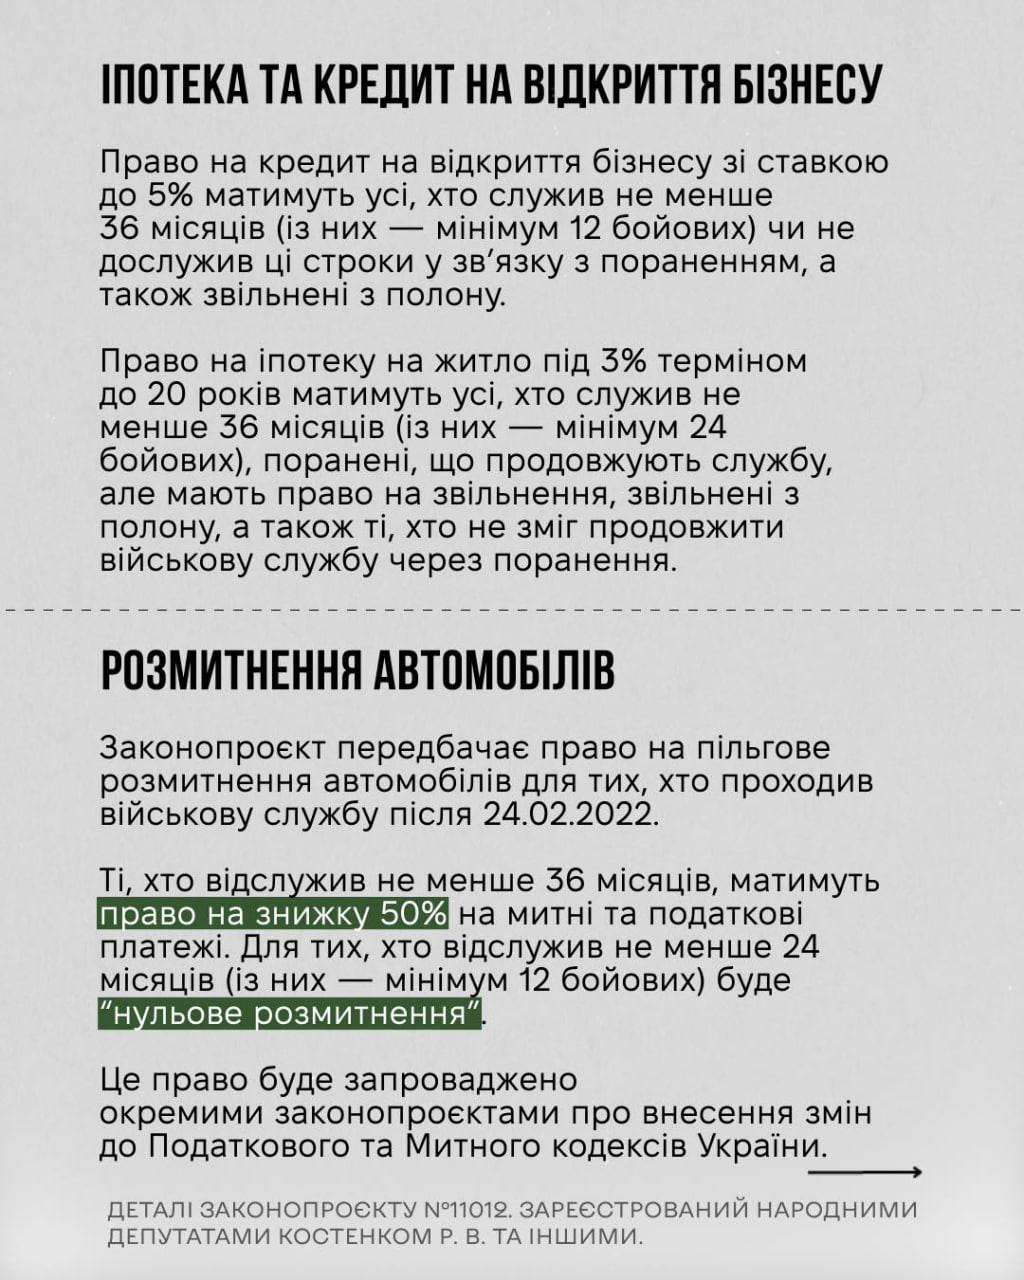 Снимок законопроекта на rada.gov.ua (с.5)